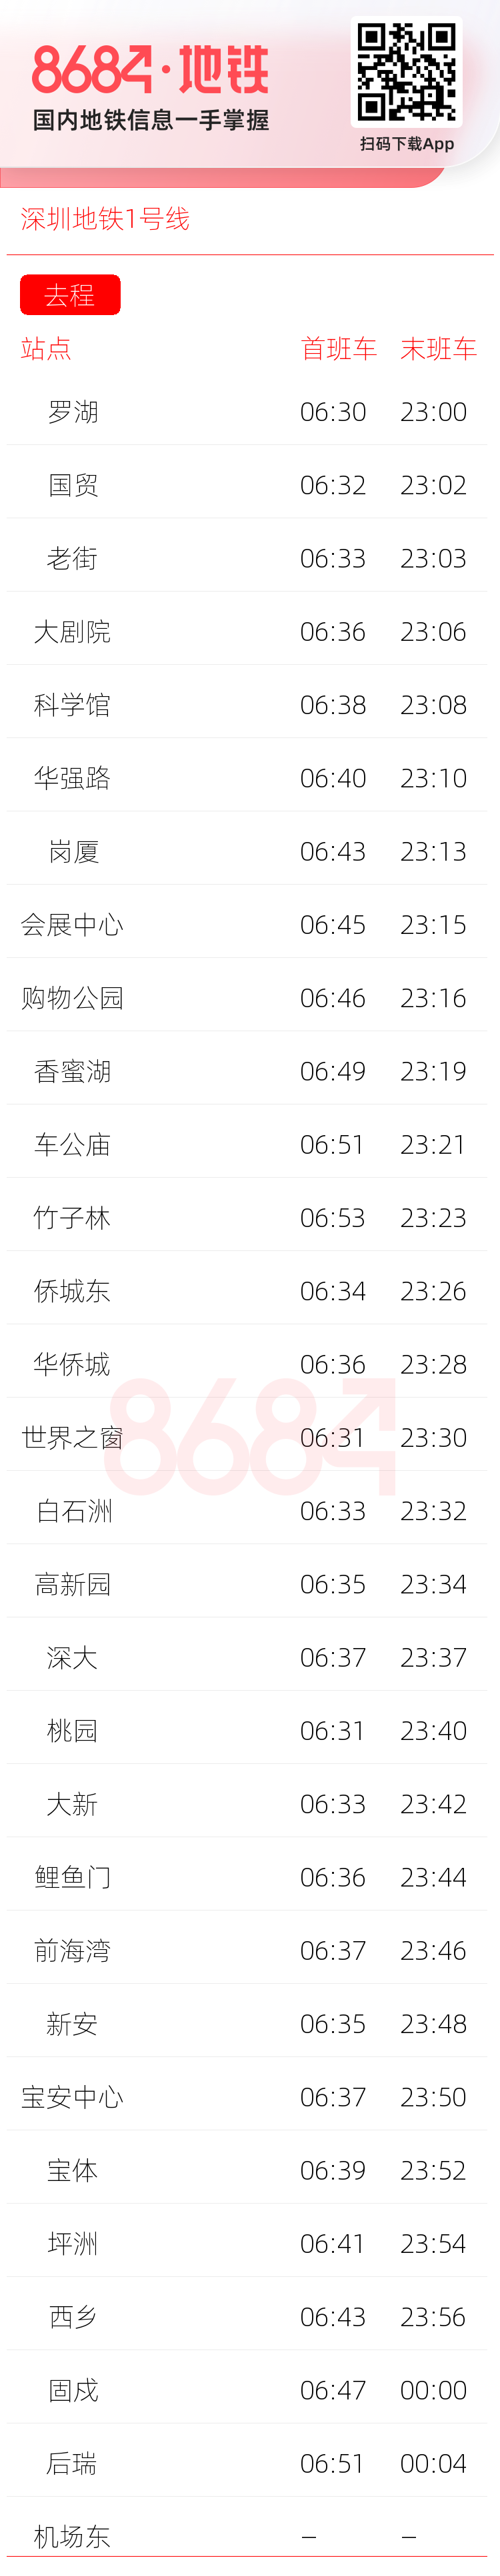 深圳地铁1号线运营时间表